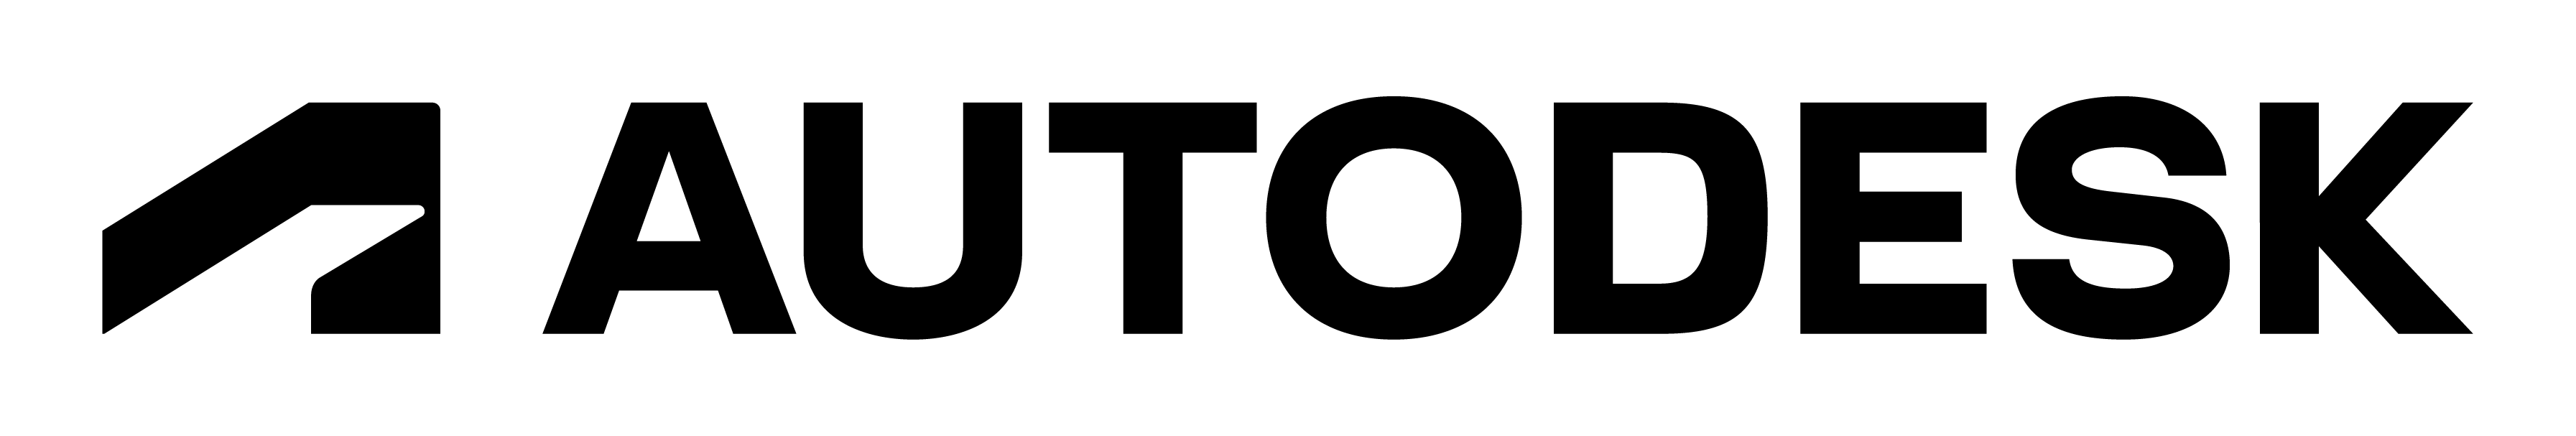 オートデスク-ブラック-ロゴ